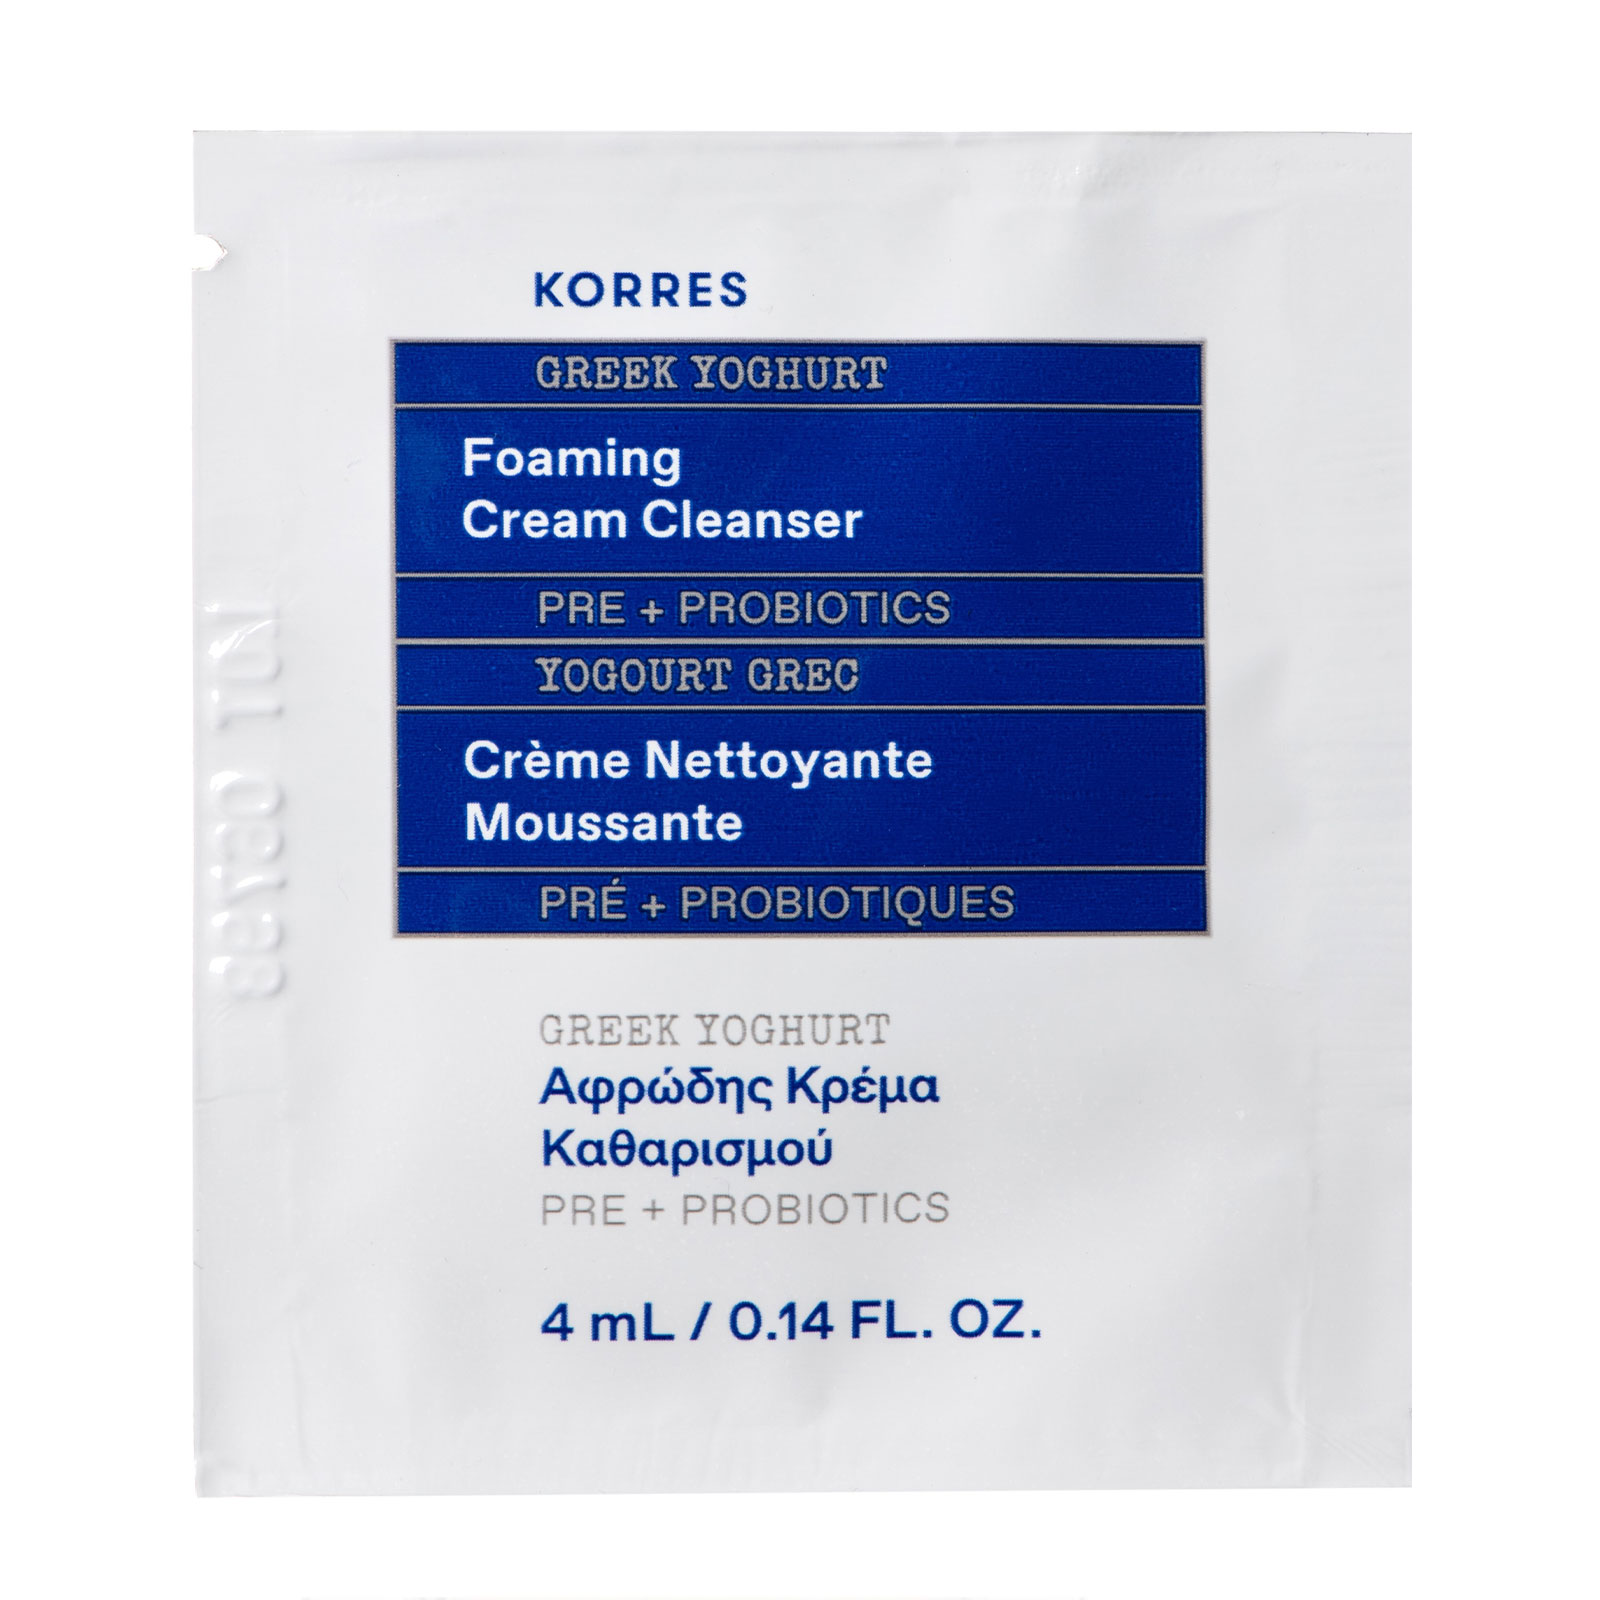 Korres Greek Yoghurt Foaming Cream Cleanser 20ml �- HK